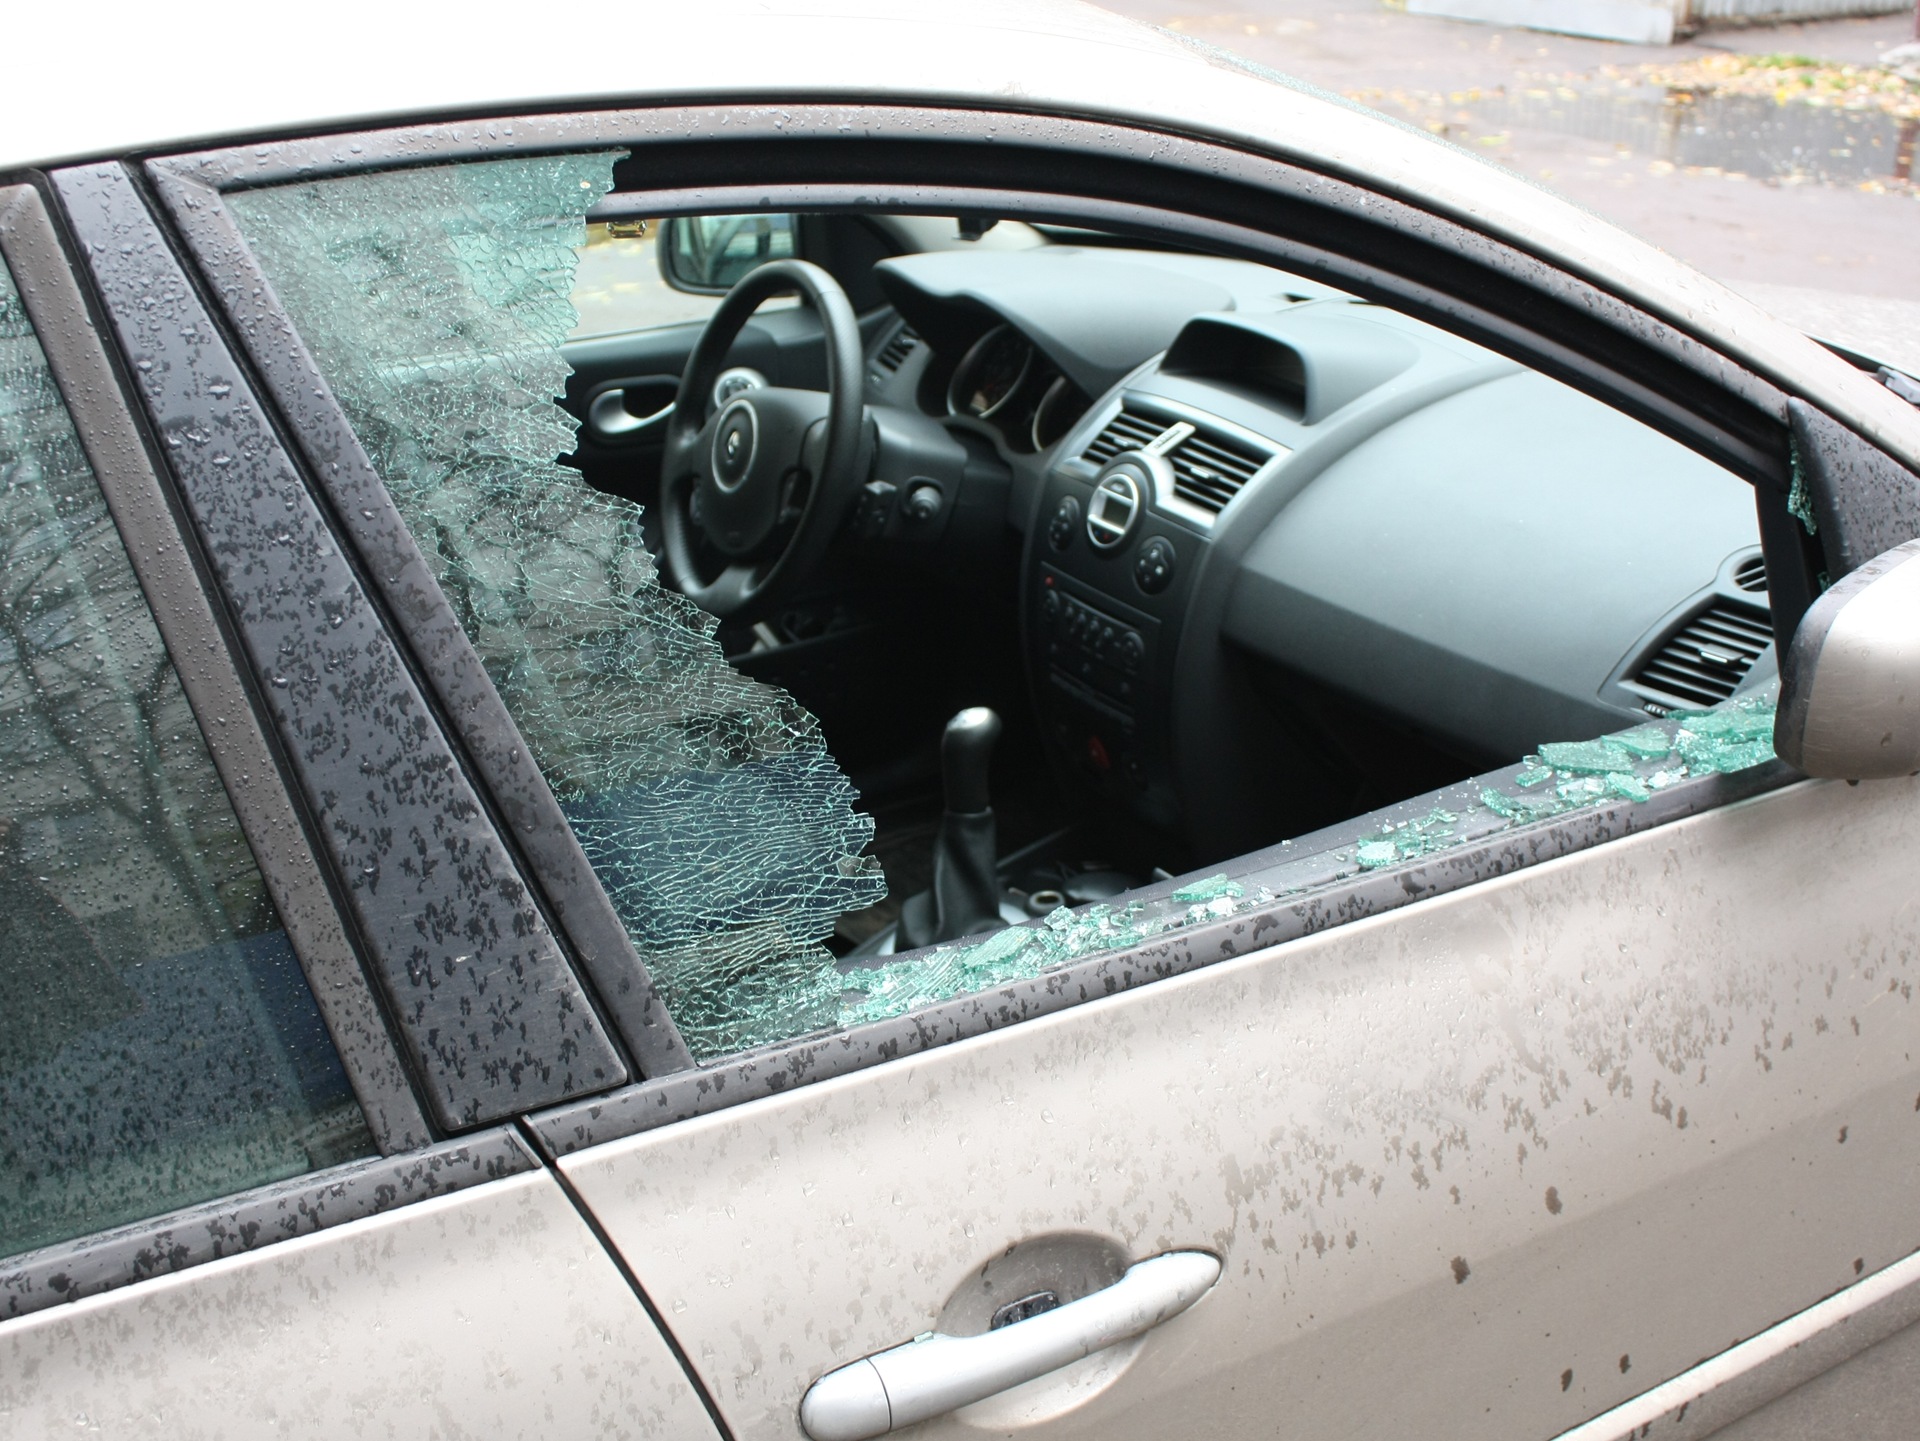 Разбиты окна машин. Разбитое боковое стекло автомобиля. Разбитое окно машины. Разбил окно в машине. Разбивает стекло авто.